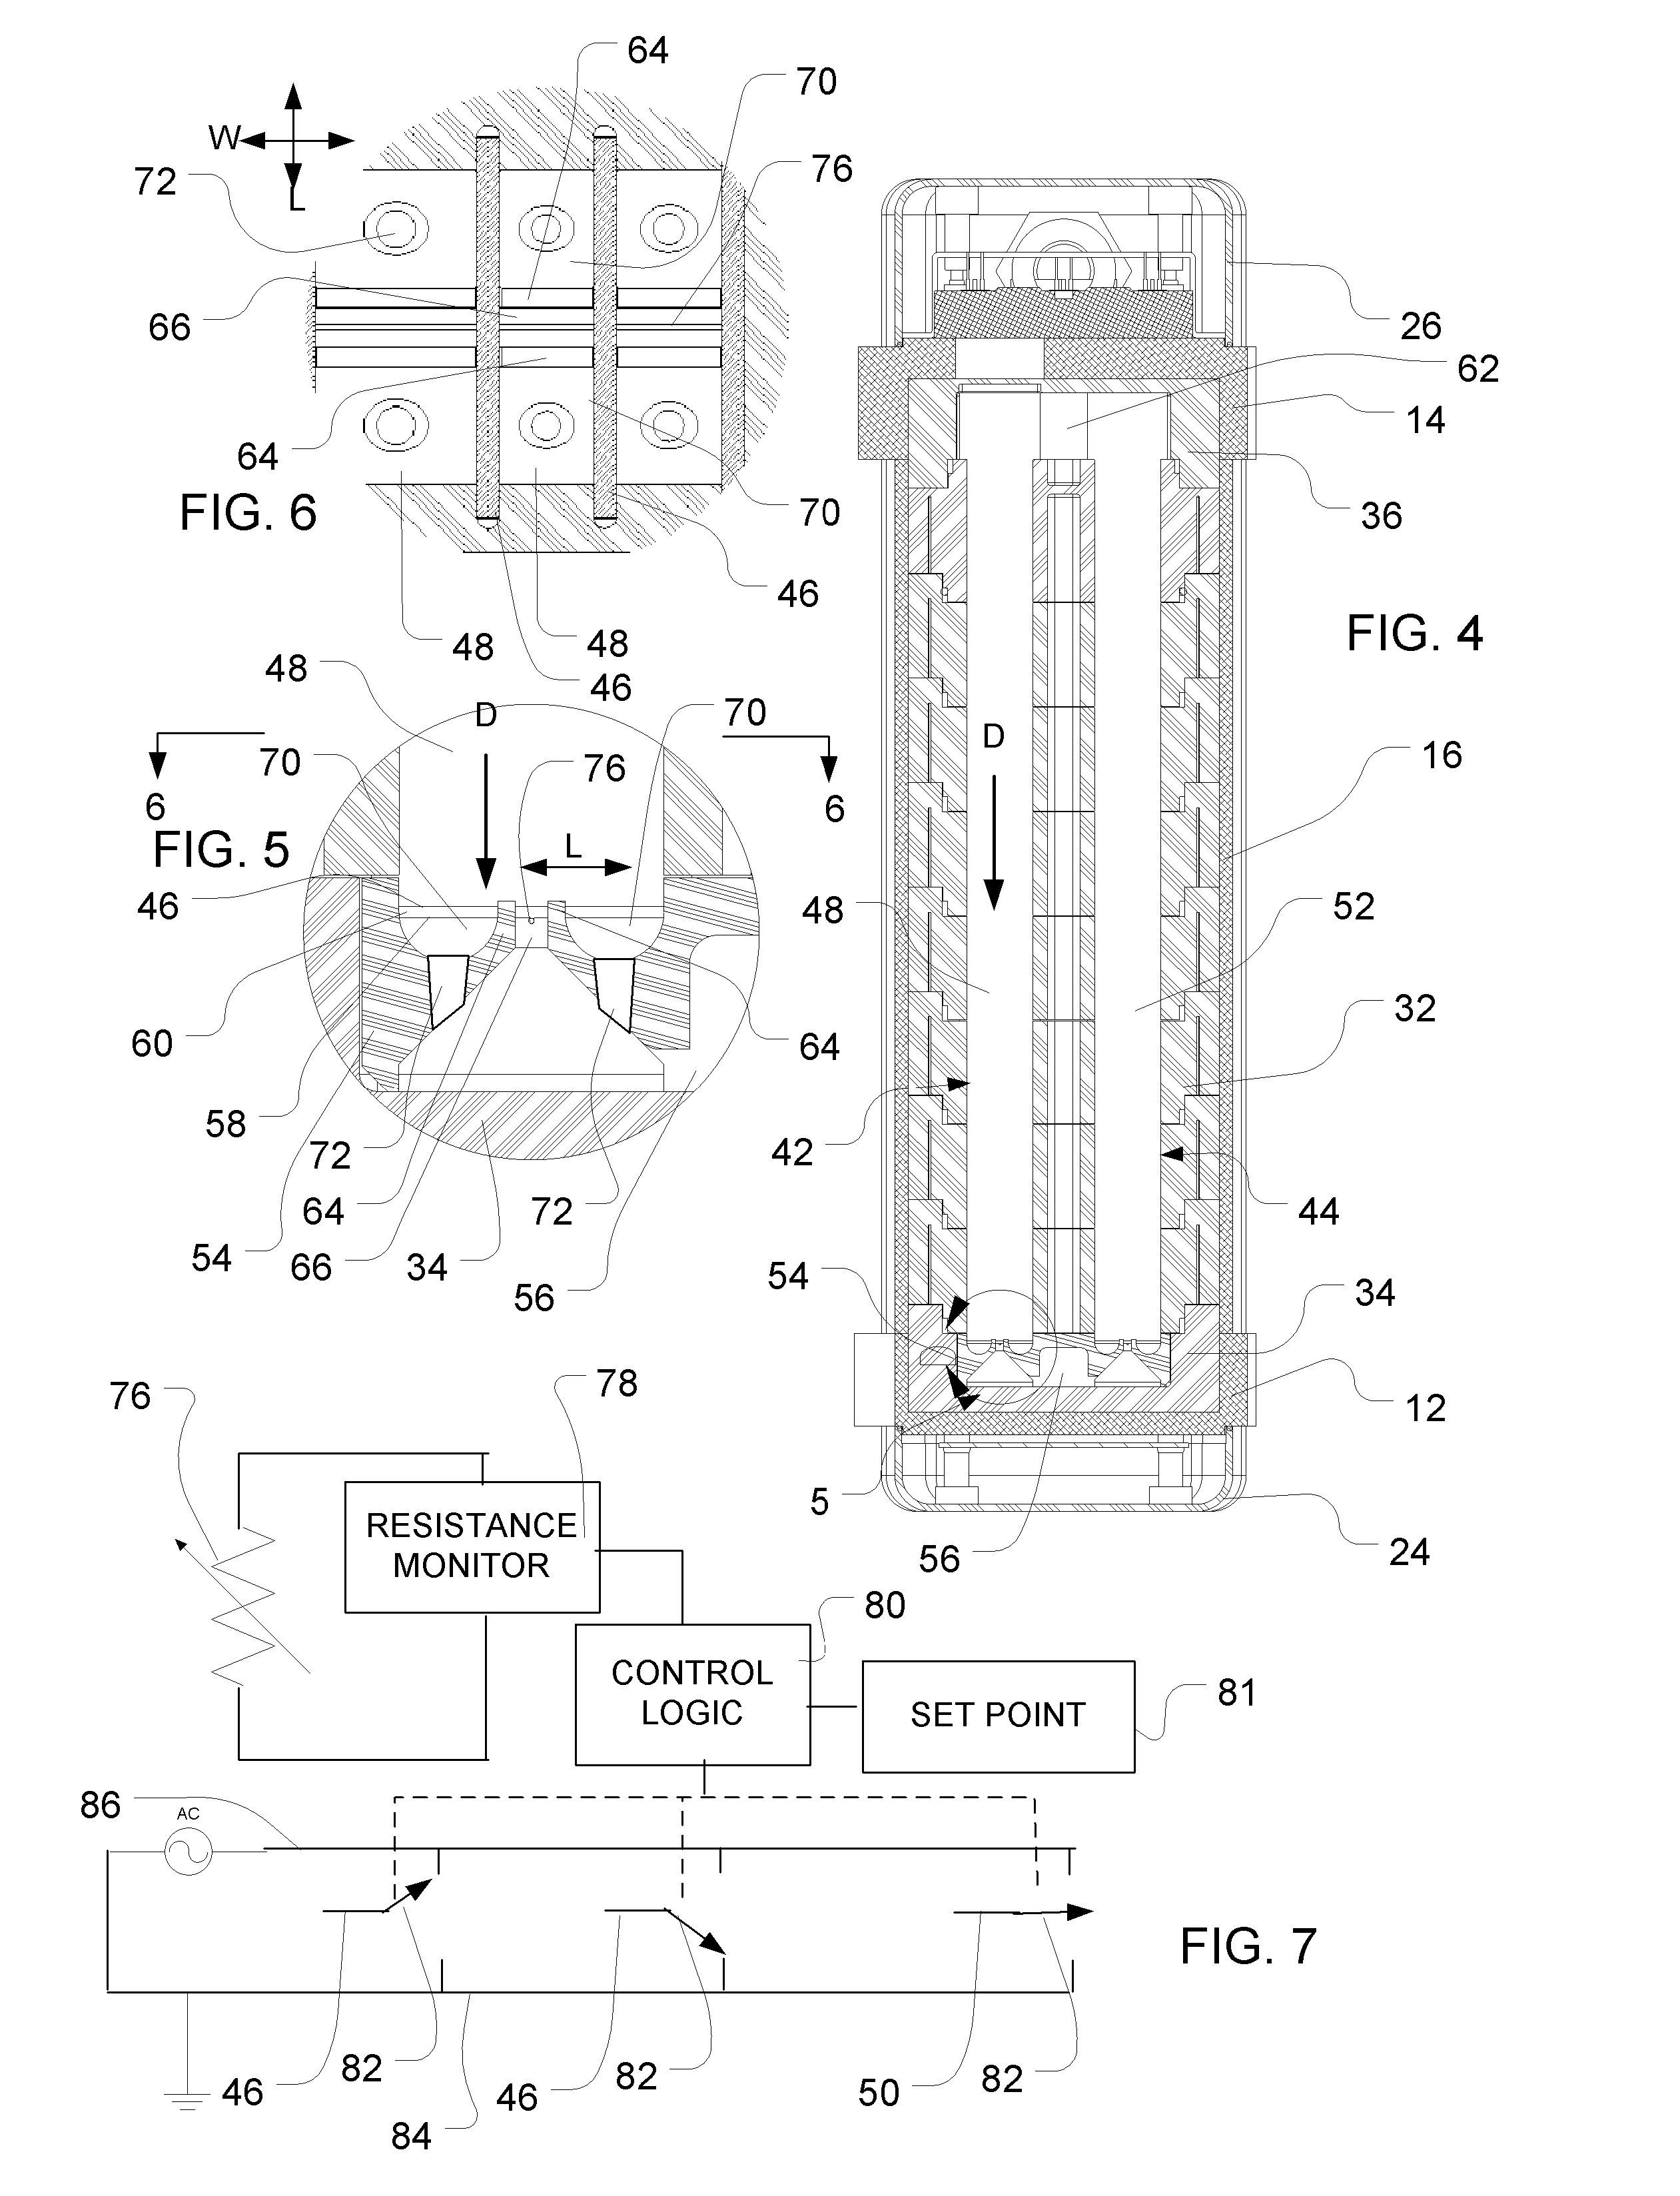 Liquid heater with temperature control